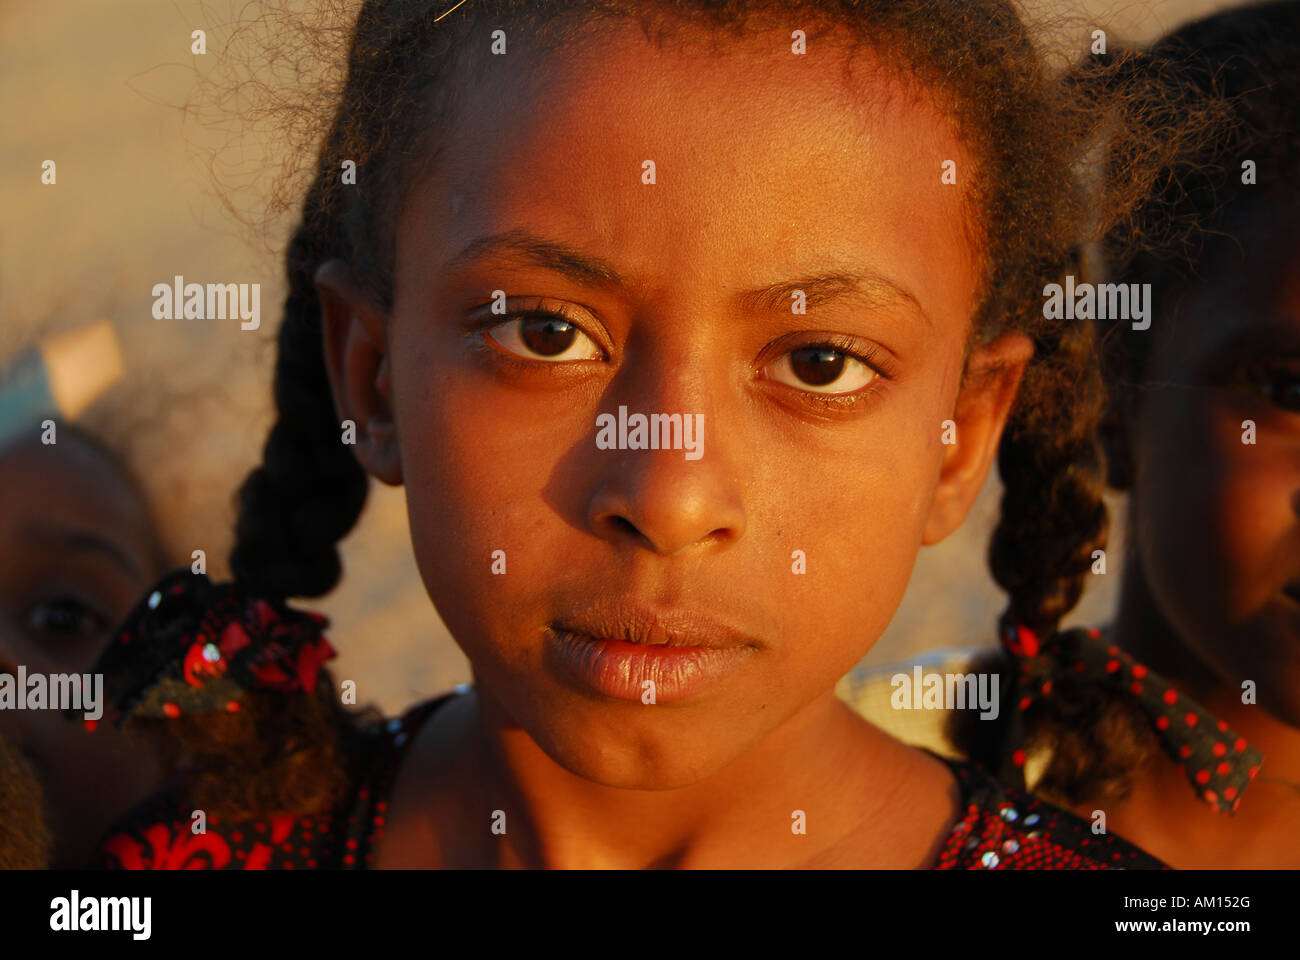 Girl, El Kurru, Sudan Stock Photo